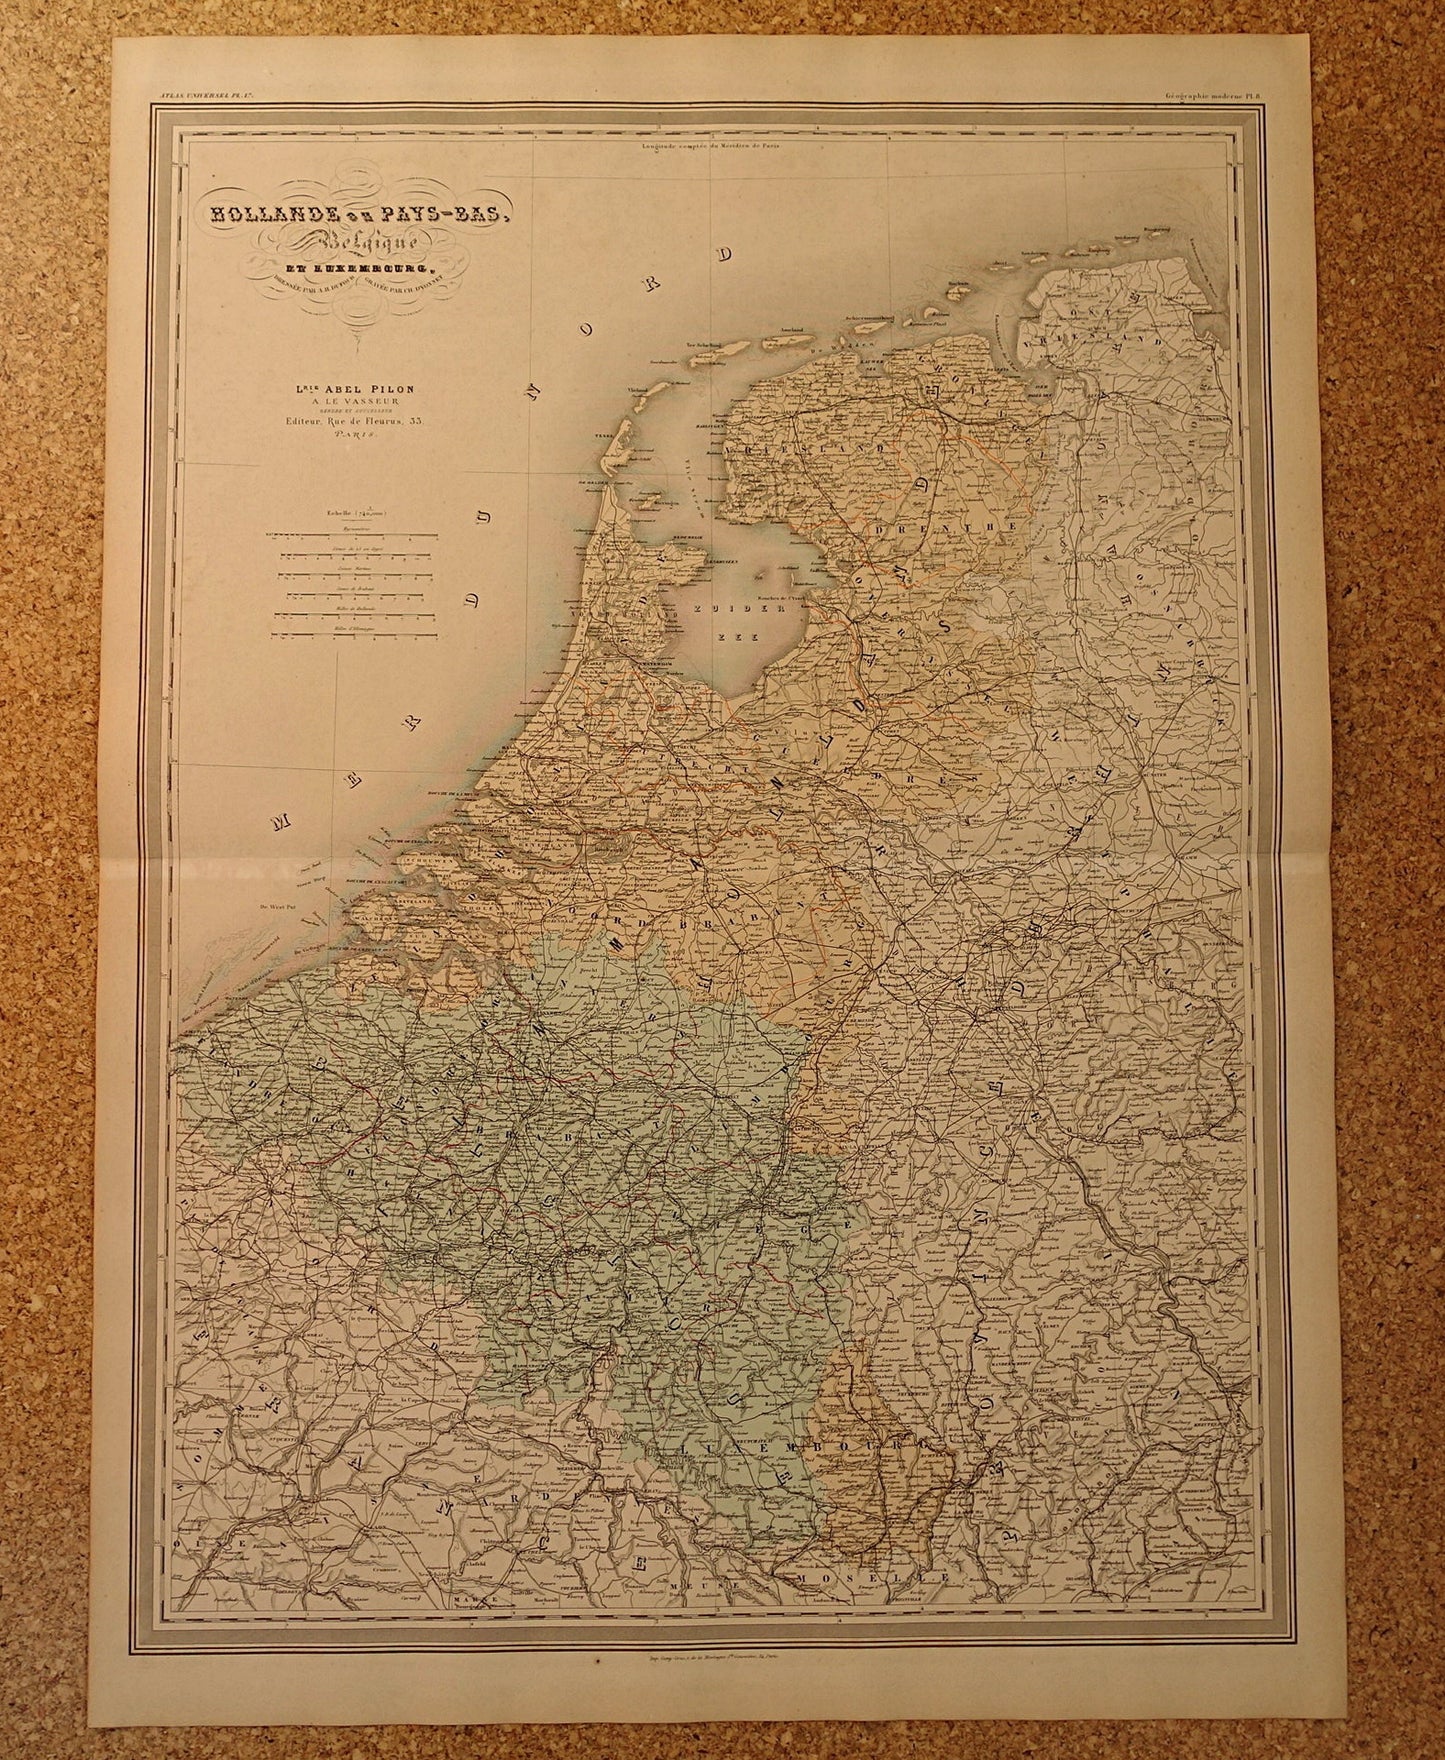 Grote Oude landkaart van Nederland en België 1878 originele antieke zeer grote kaart poster